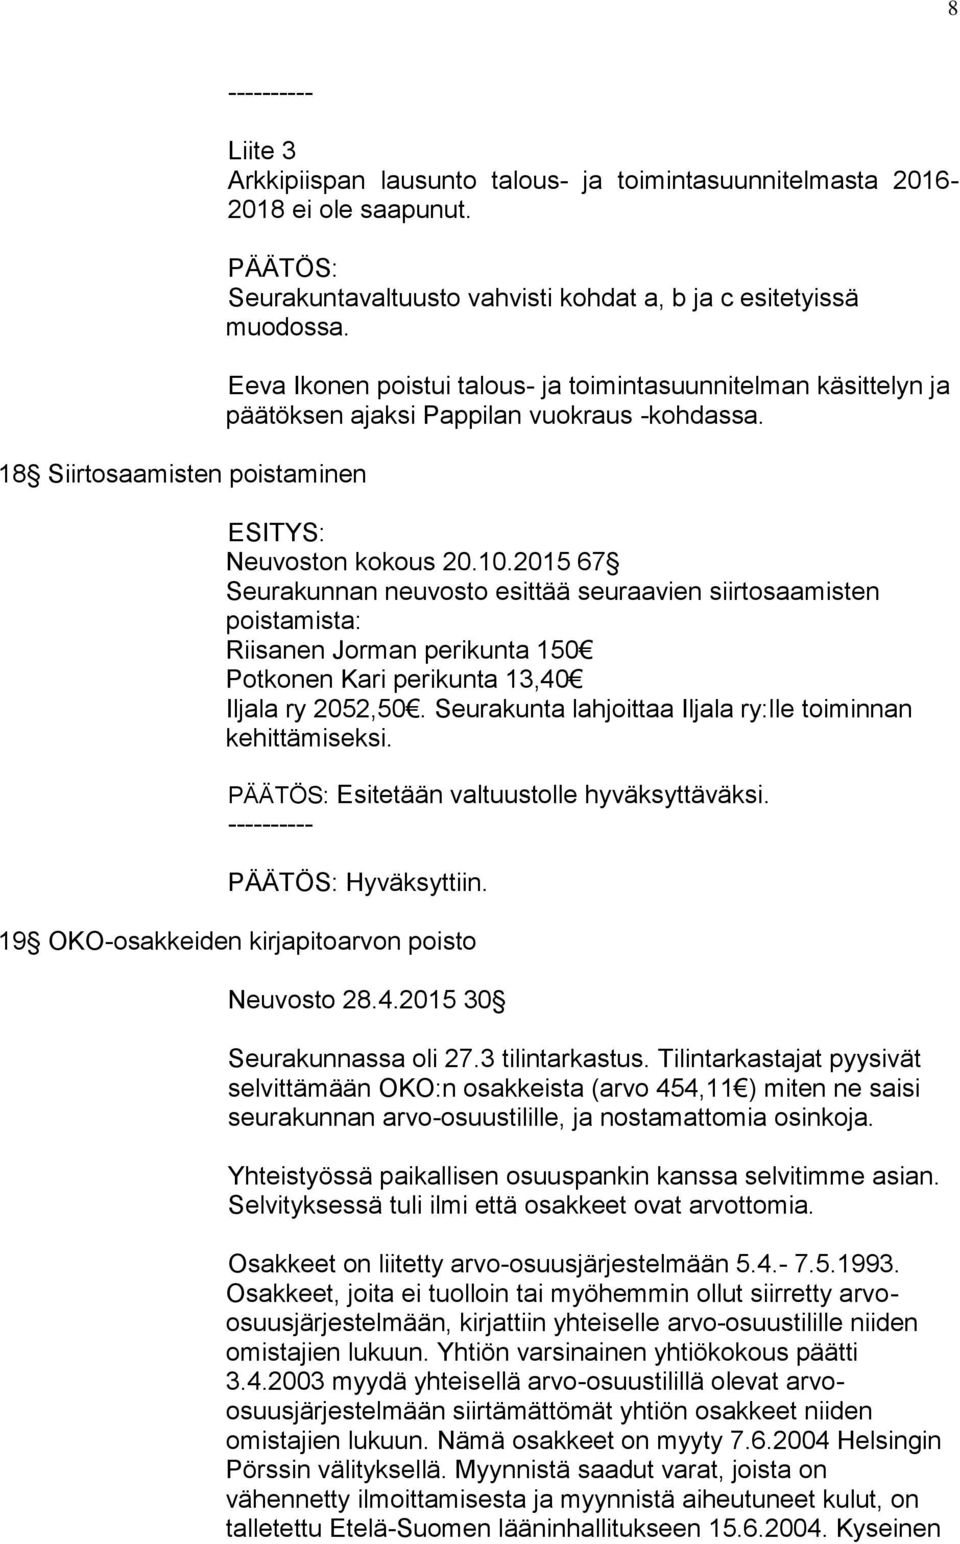 Neuvoston kokous 20.10.2015 67 Seurakunnan neuvosto esittää seuraavien siirtosaamisten poistamista: Riisanen Jorman perikunta 150 Potkonen Kari perikunta 13,40 Iljala ry 2052,50.